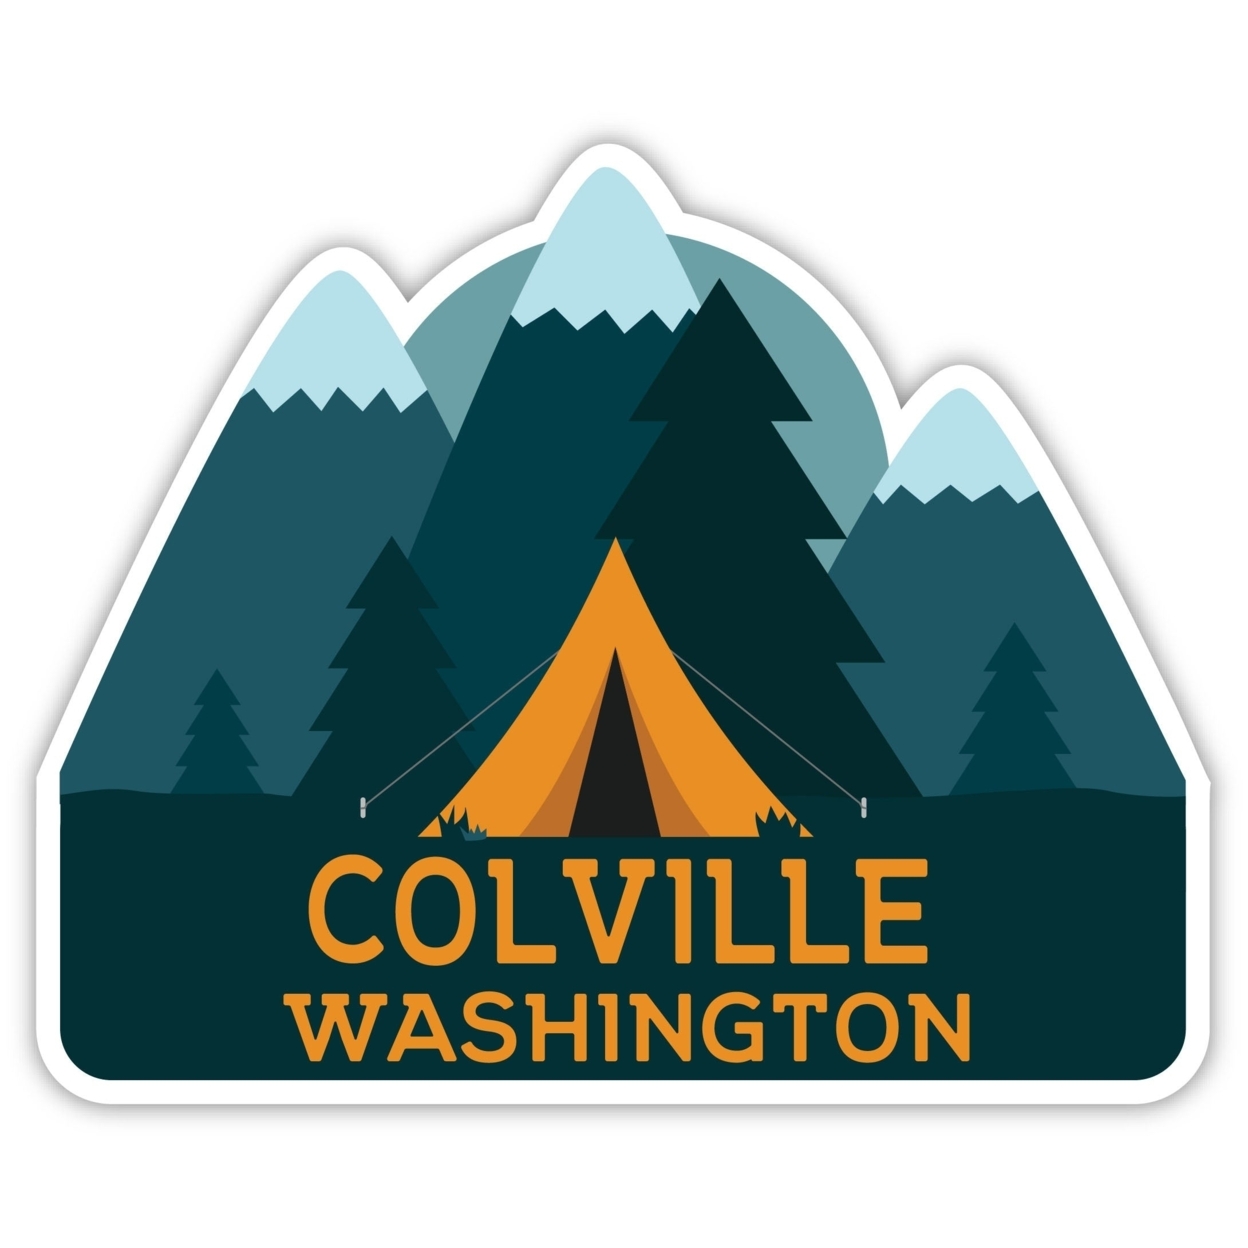 Colville Washington Souvenir Decorative Stickers (Choose Theme And Size) - Single Unit, 2-Inch, Tent